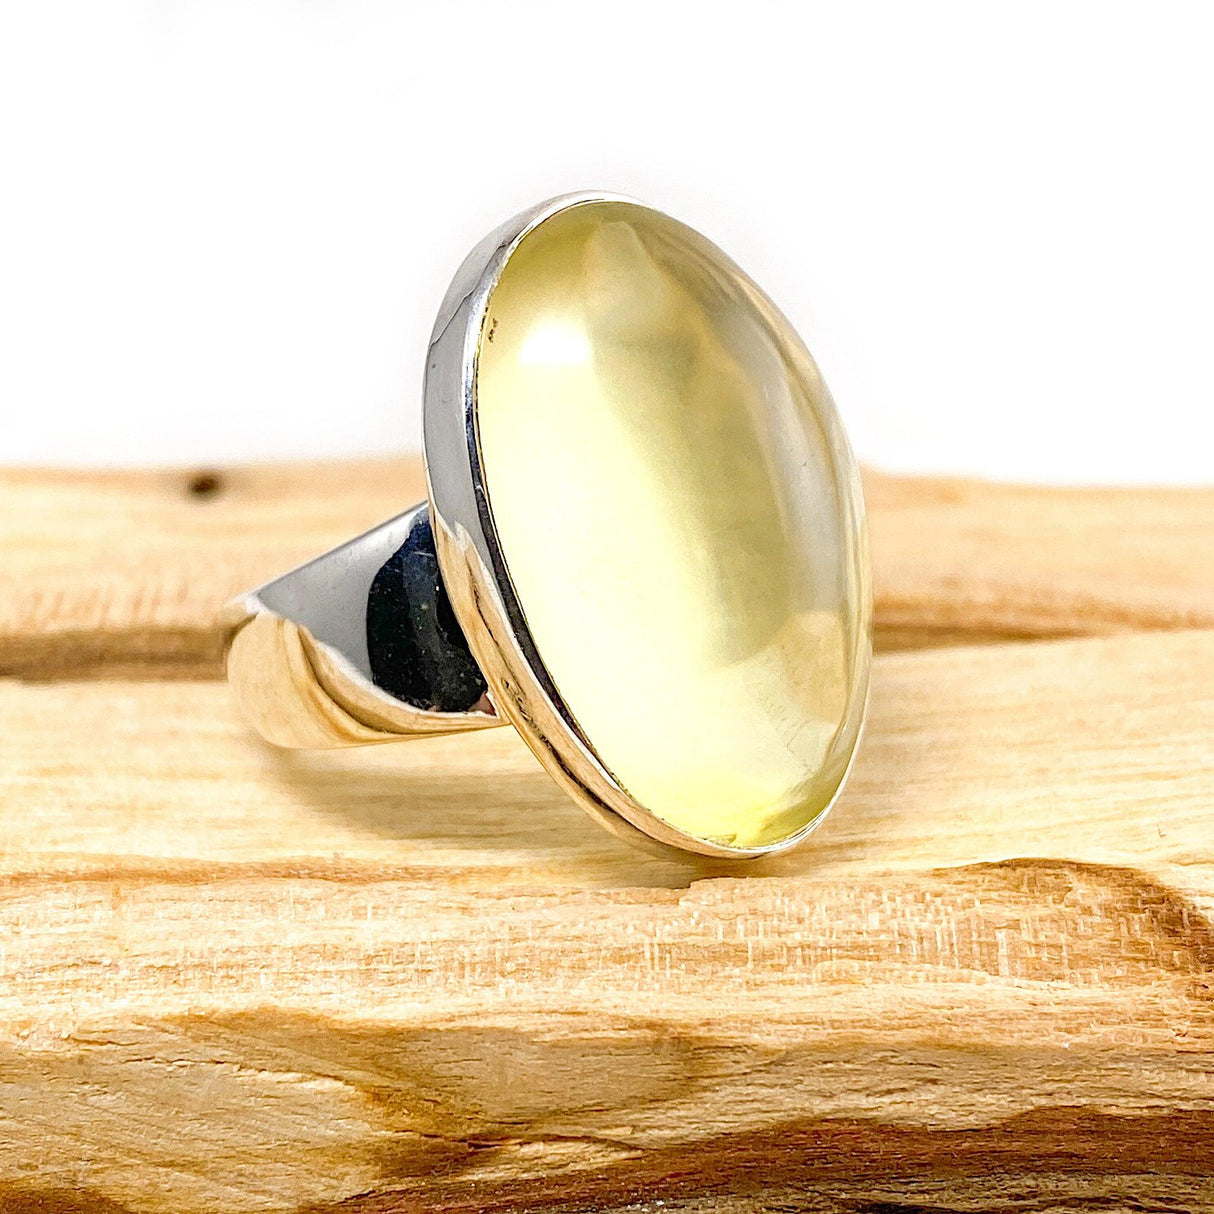 Lemon Quartz oval ring s. 8 KRGJ1443 - Nature's Magick